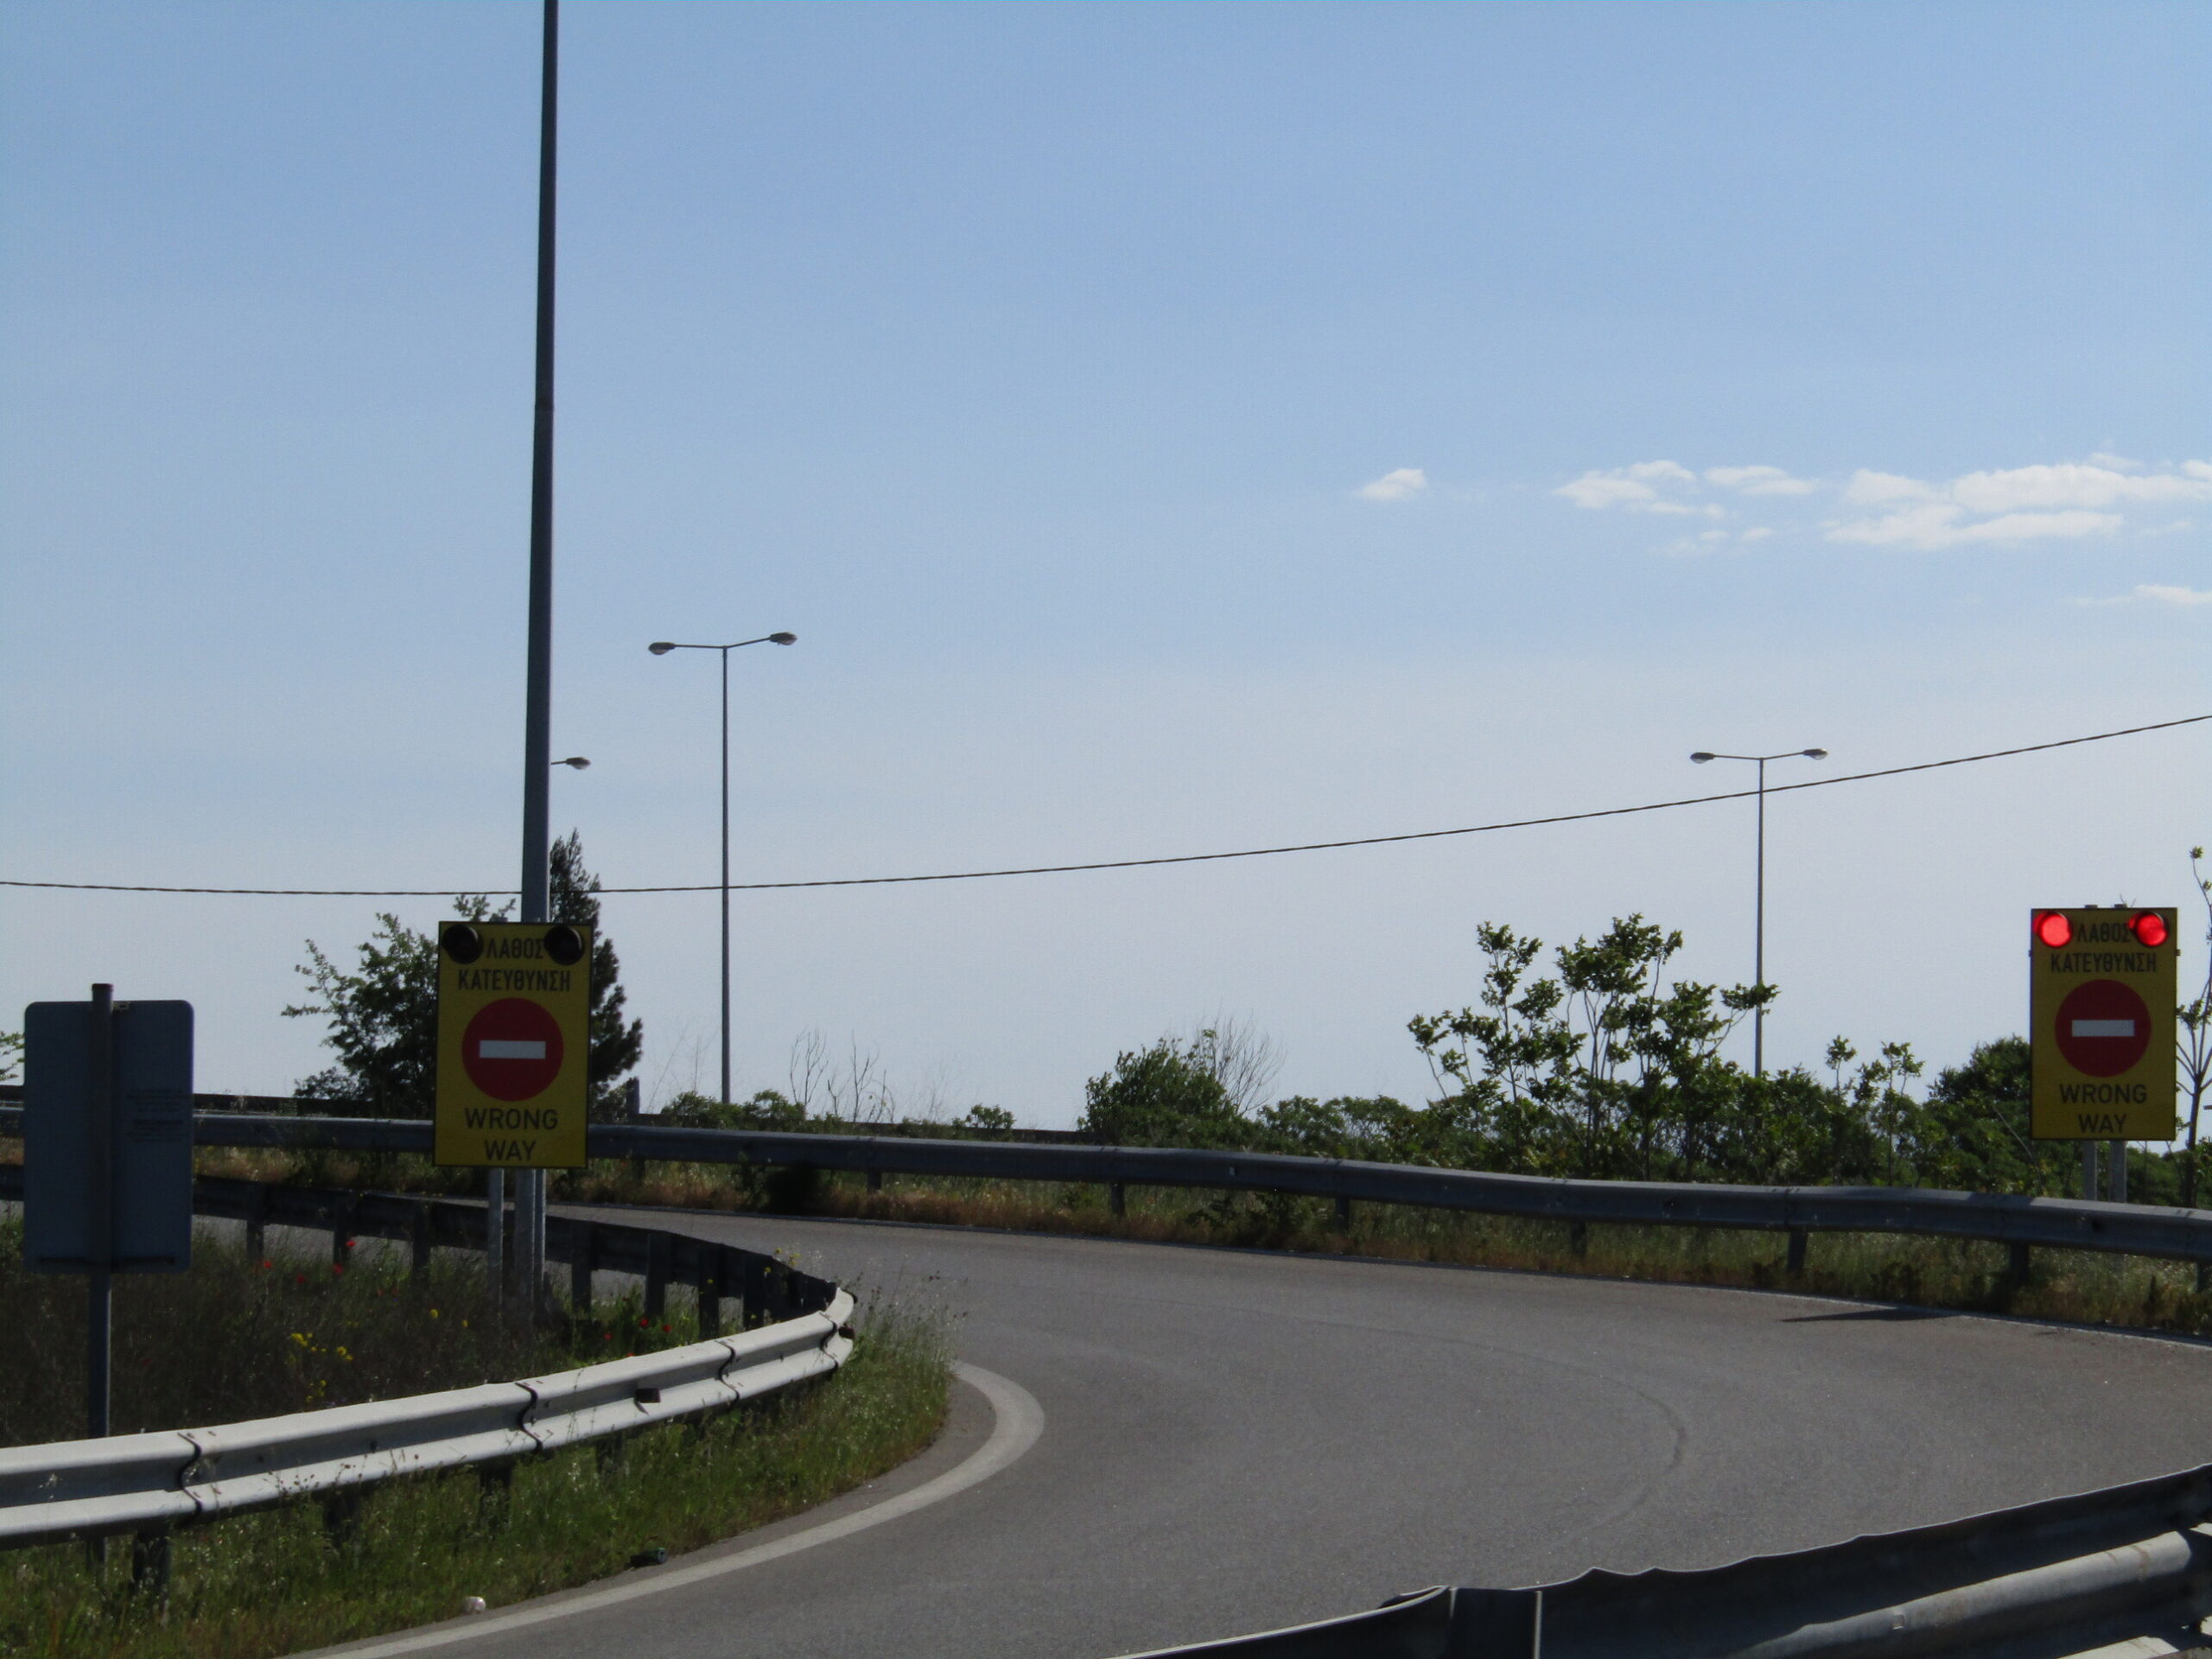 Πινακίδες με φωτεινή σηματοδότηση στην Εγνατία Οδό προειδοποιούν για “λάθος κατεύθυνση” τους οδηγούς